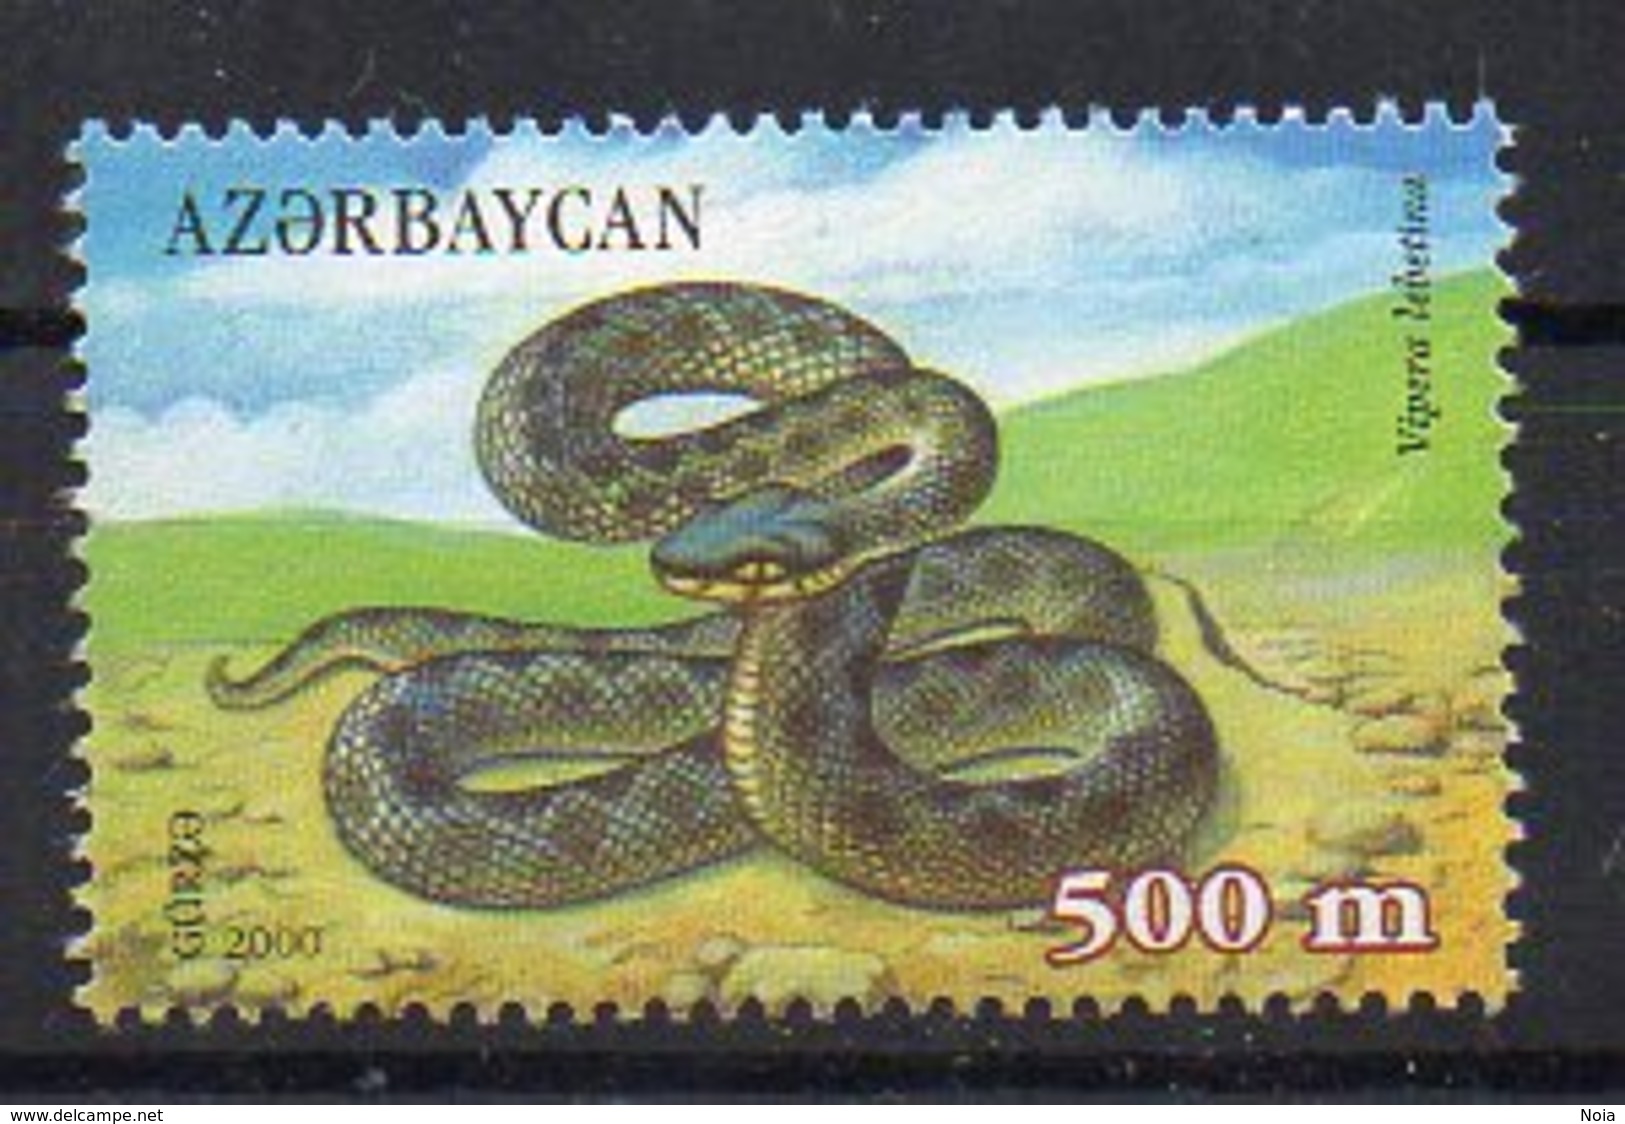 AZERBAYAN. REPTILES. MNH (1R0514) - Snakes